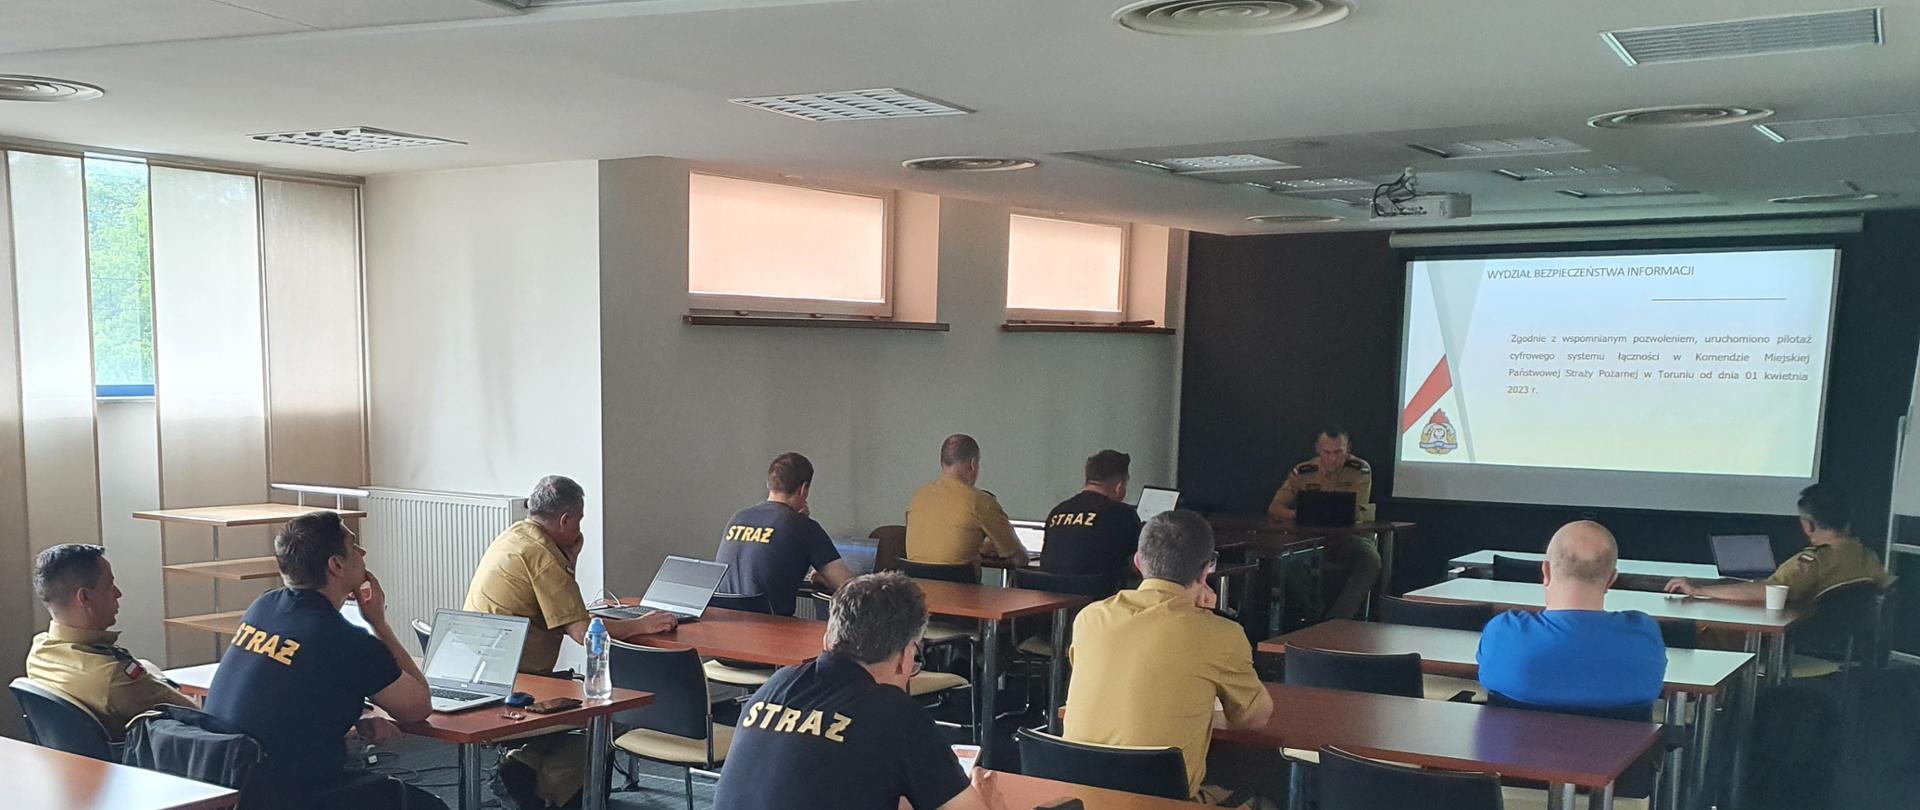 Strażacy pracujący w sali konferencyjnej podczas szkolenia